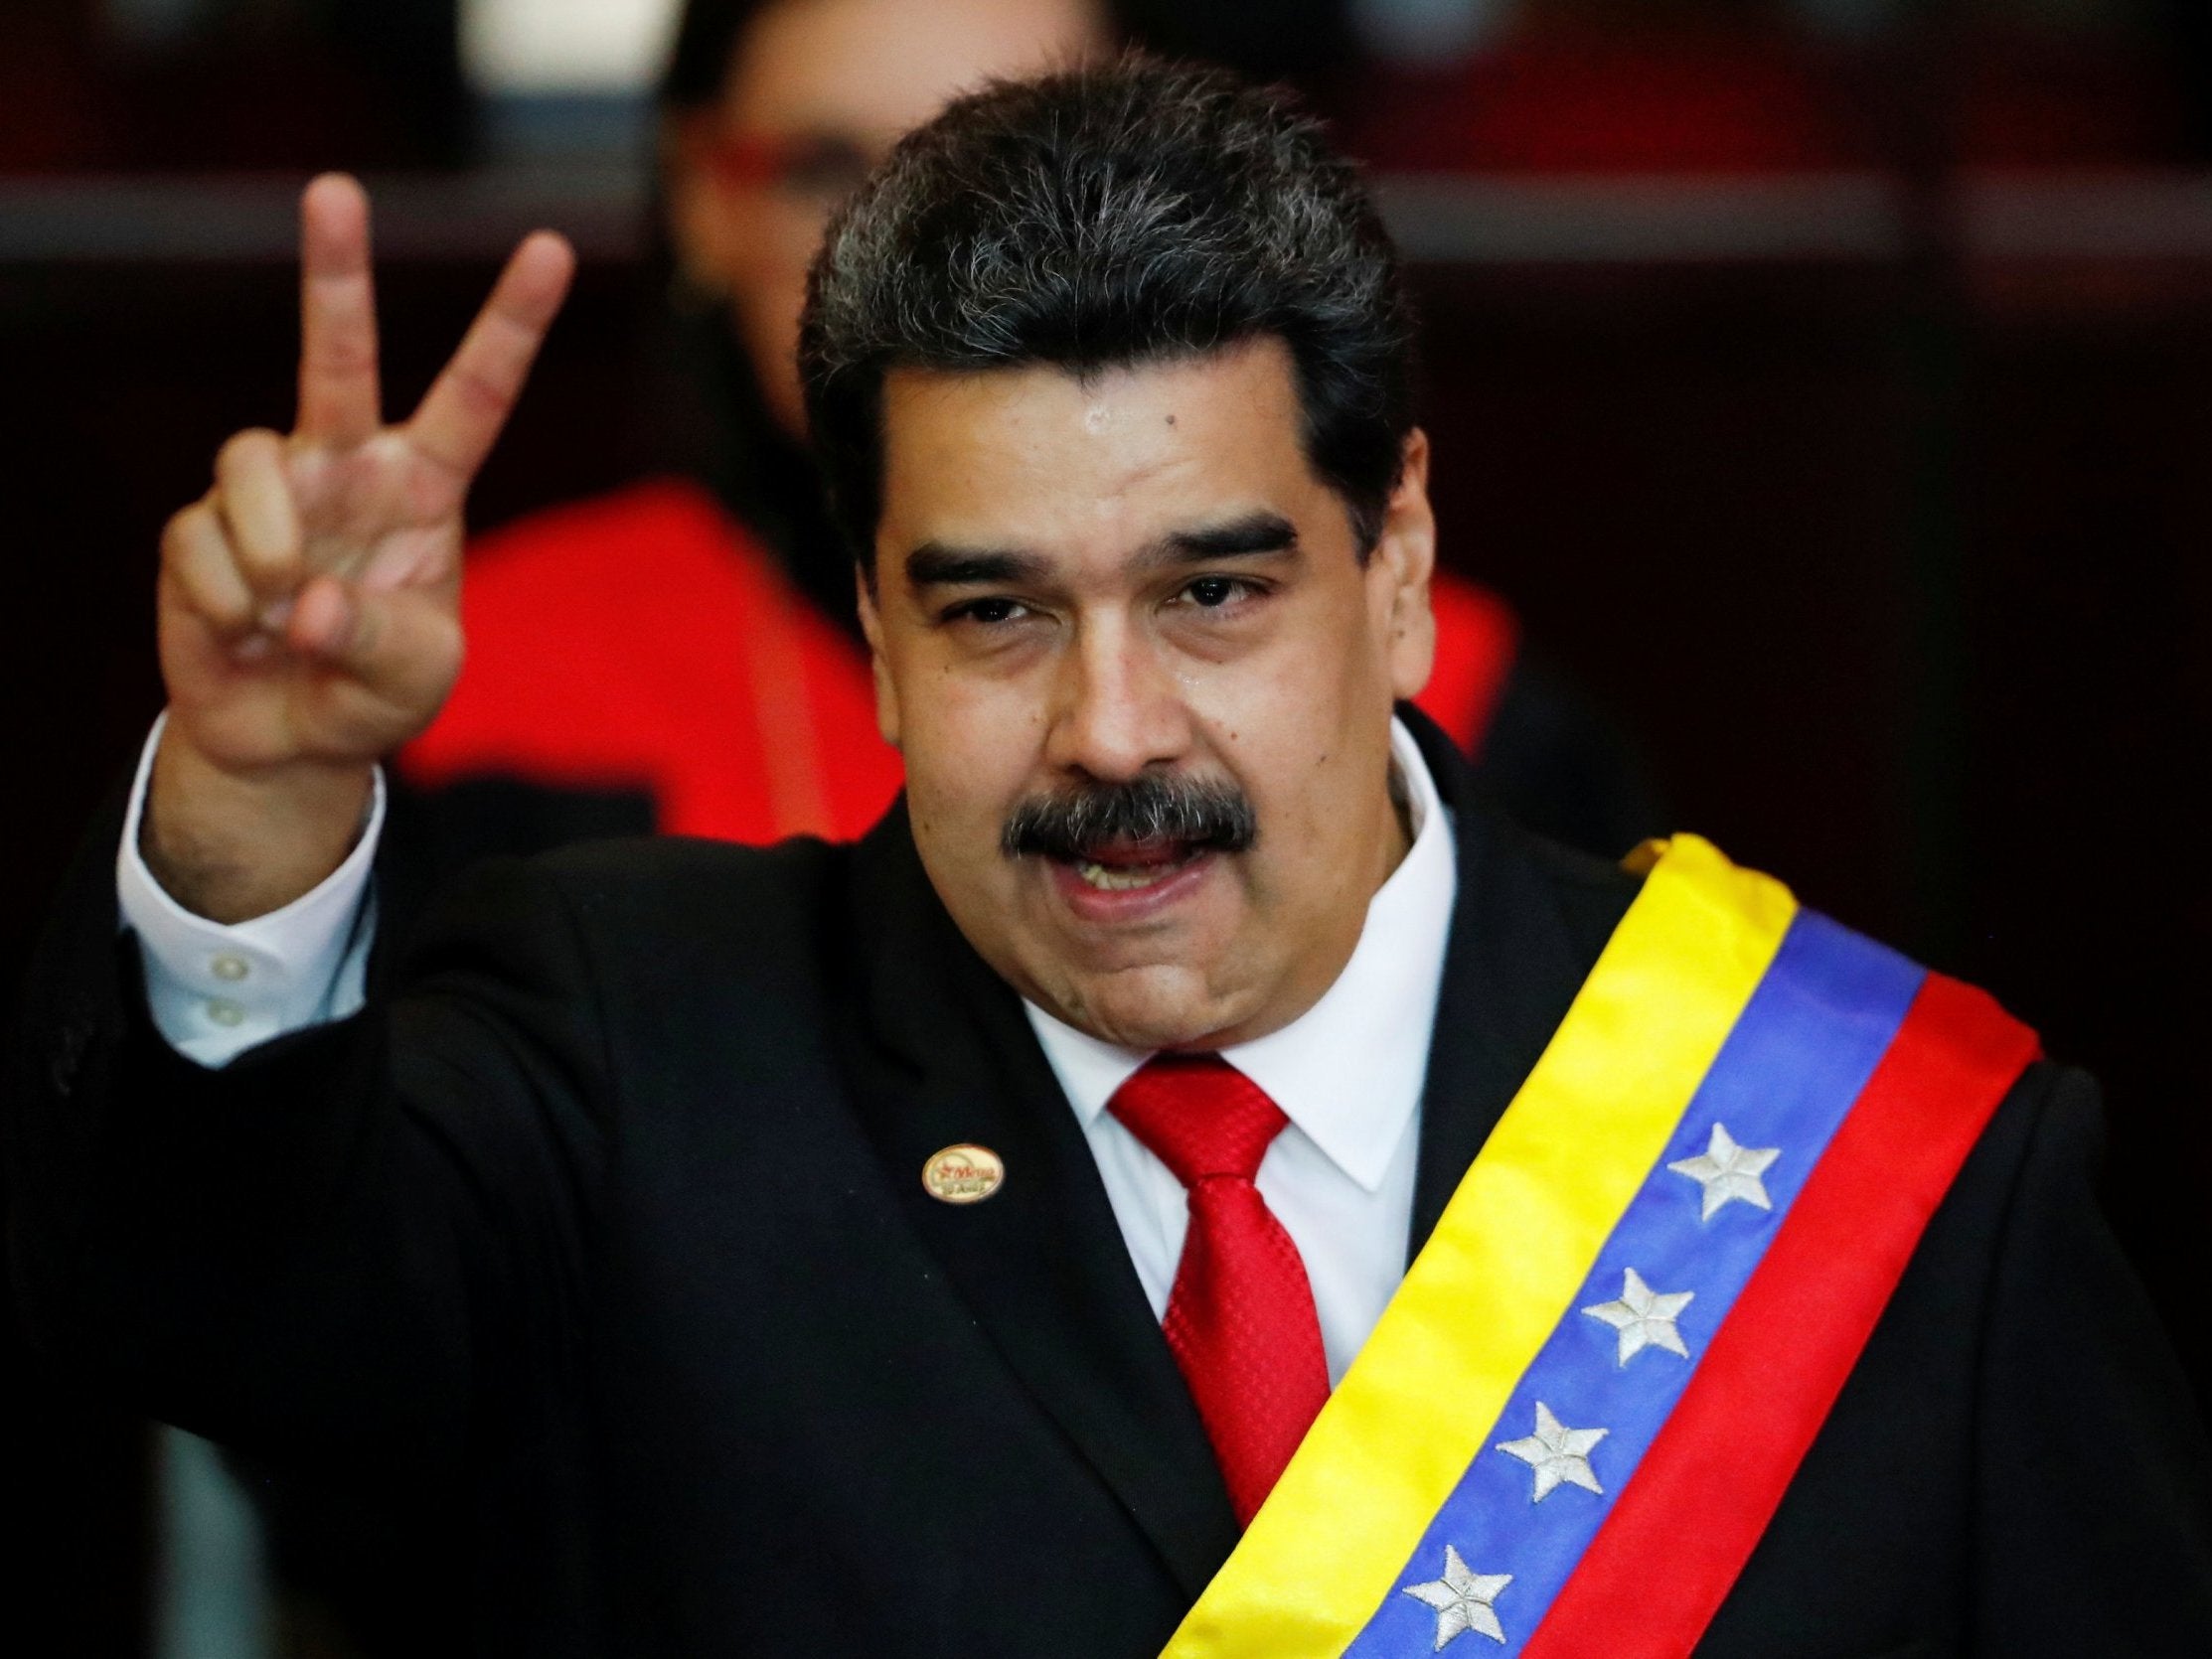 ÙØªÙØ¬Ø© Ø¨Ø­Ø« Ø§ÙØµÙØ± Ø¹Ù âªPresident of Venezuelaâ¬â